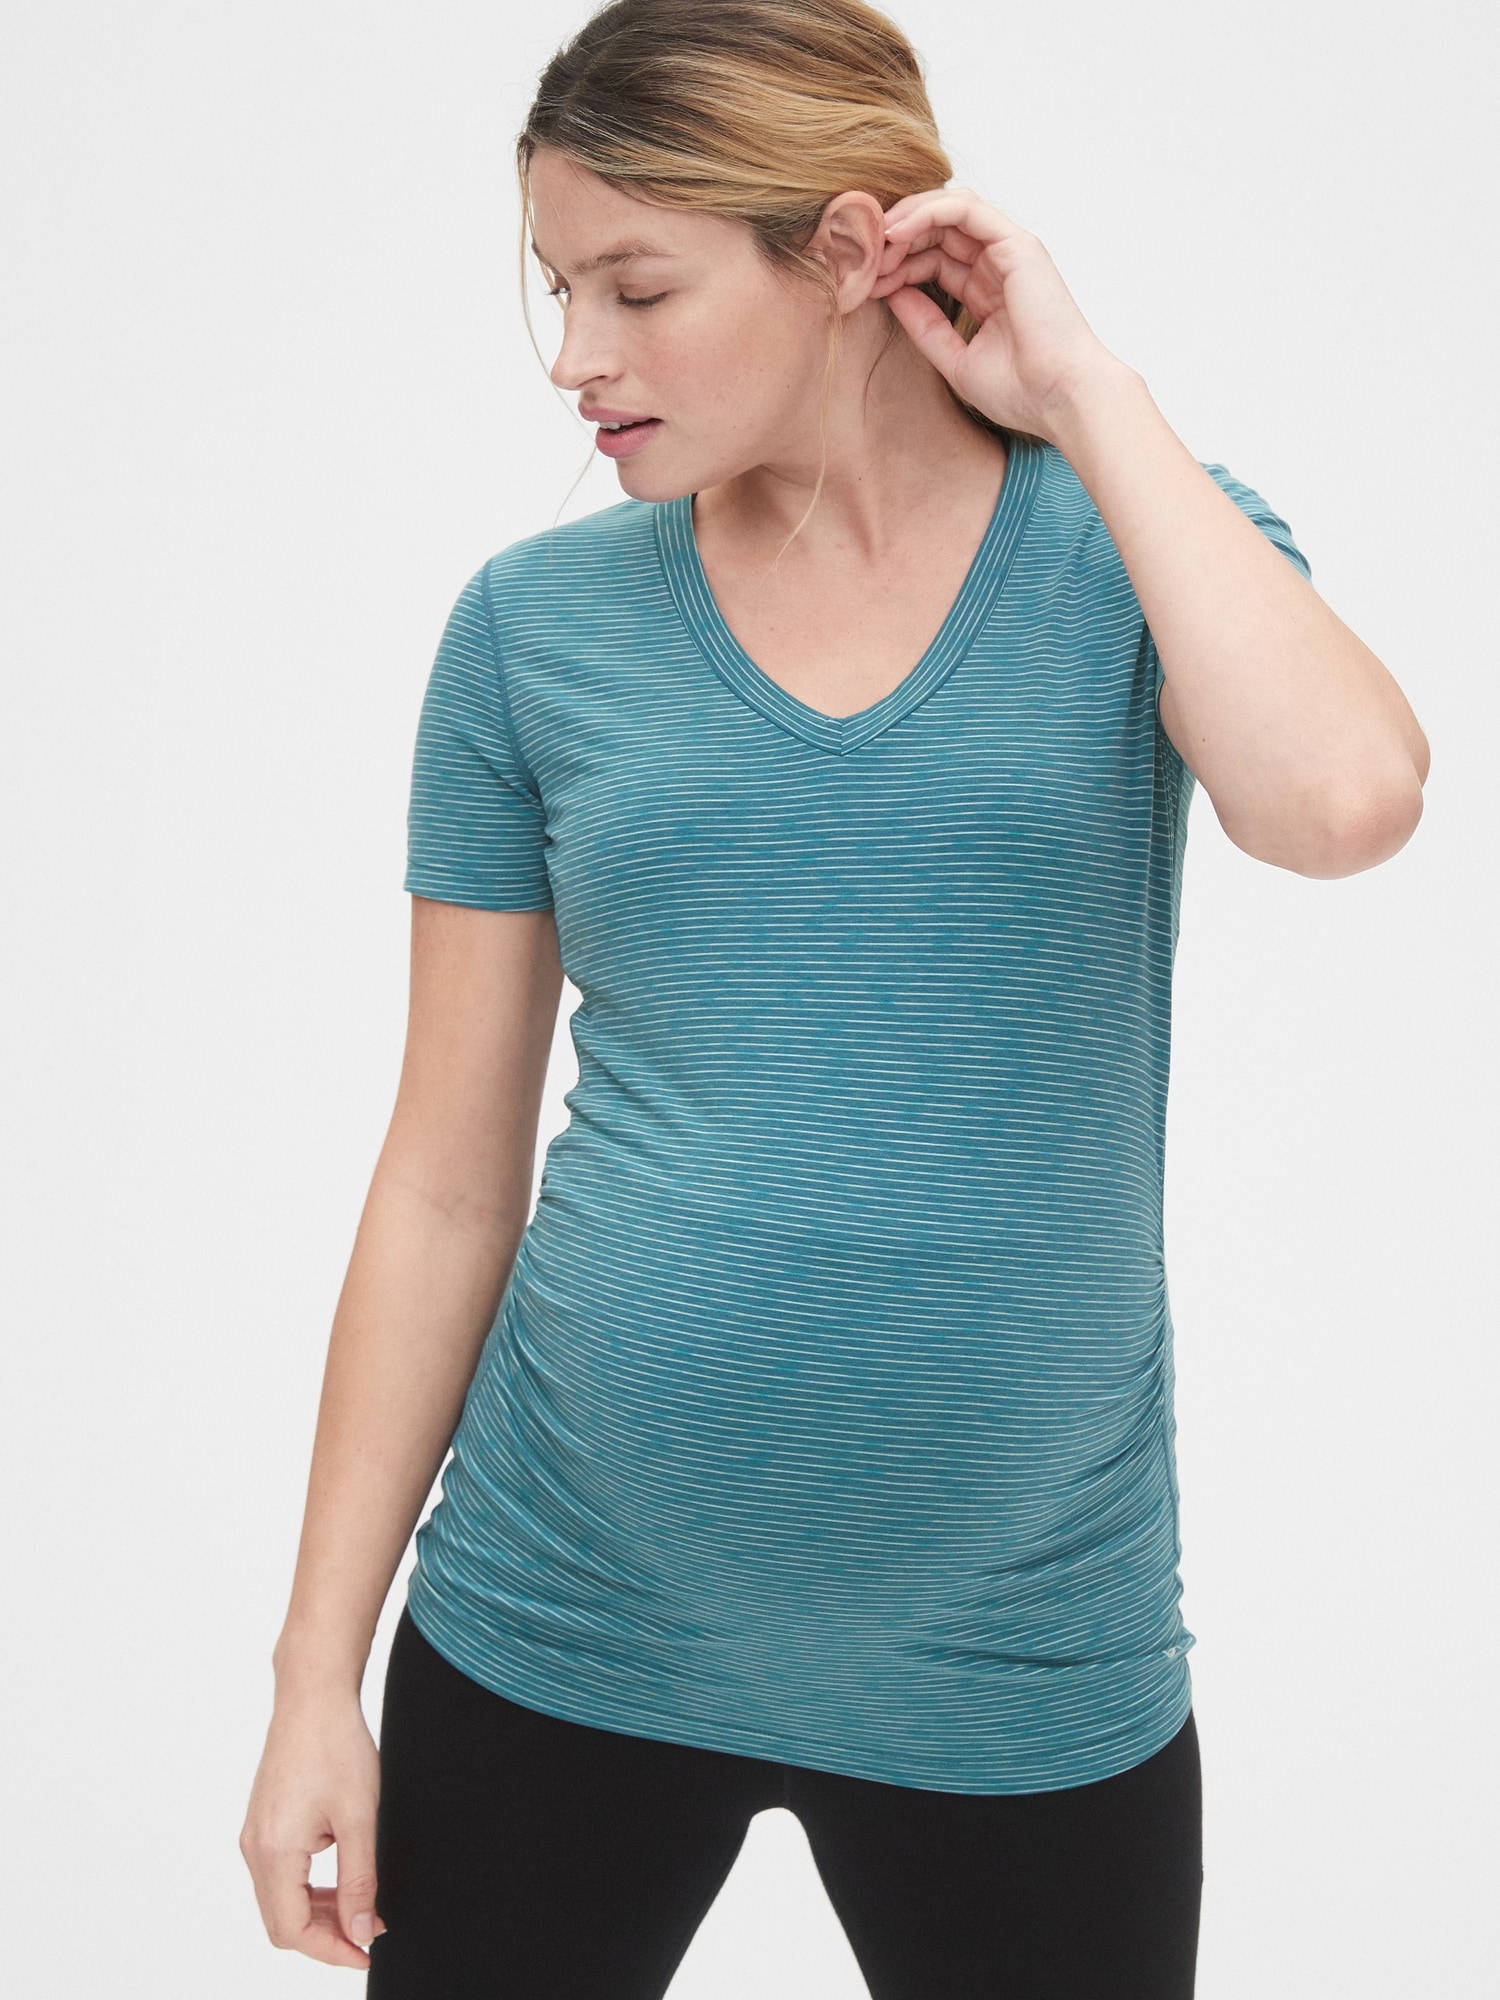 Maternity GapFit Breathe V-Neck T-Shirt